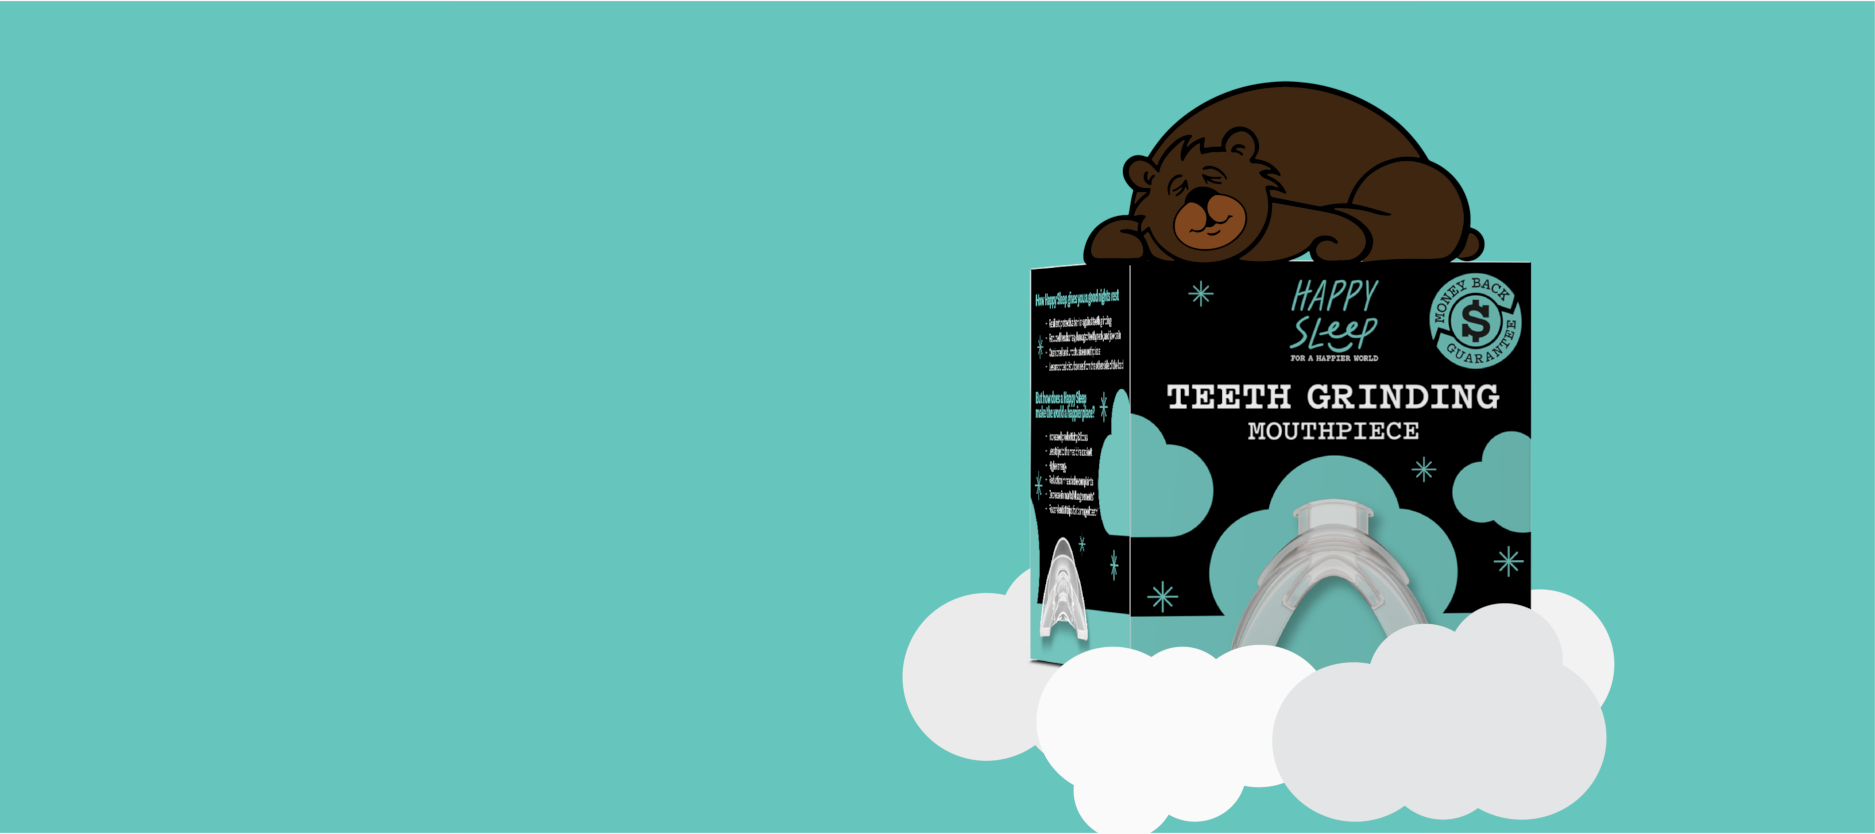 Cartoon bear sleeping on box of Happy Sleep Teeth Grinding Night Guard